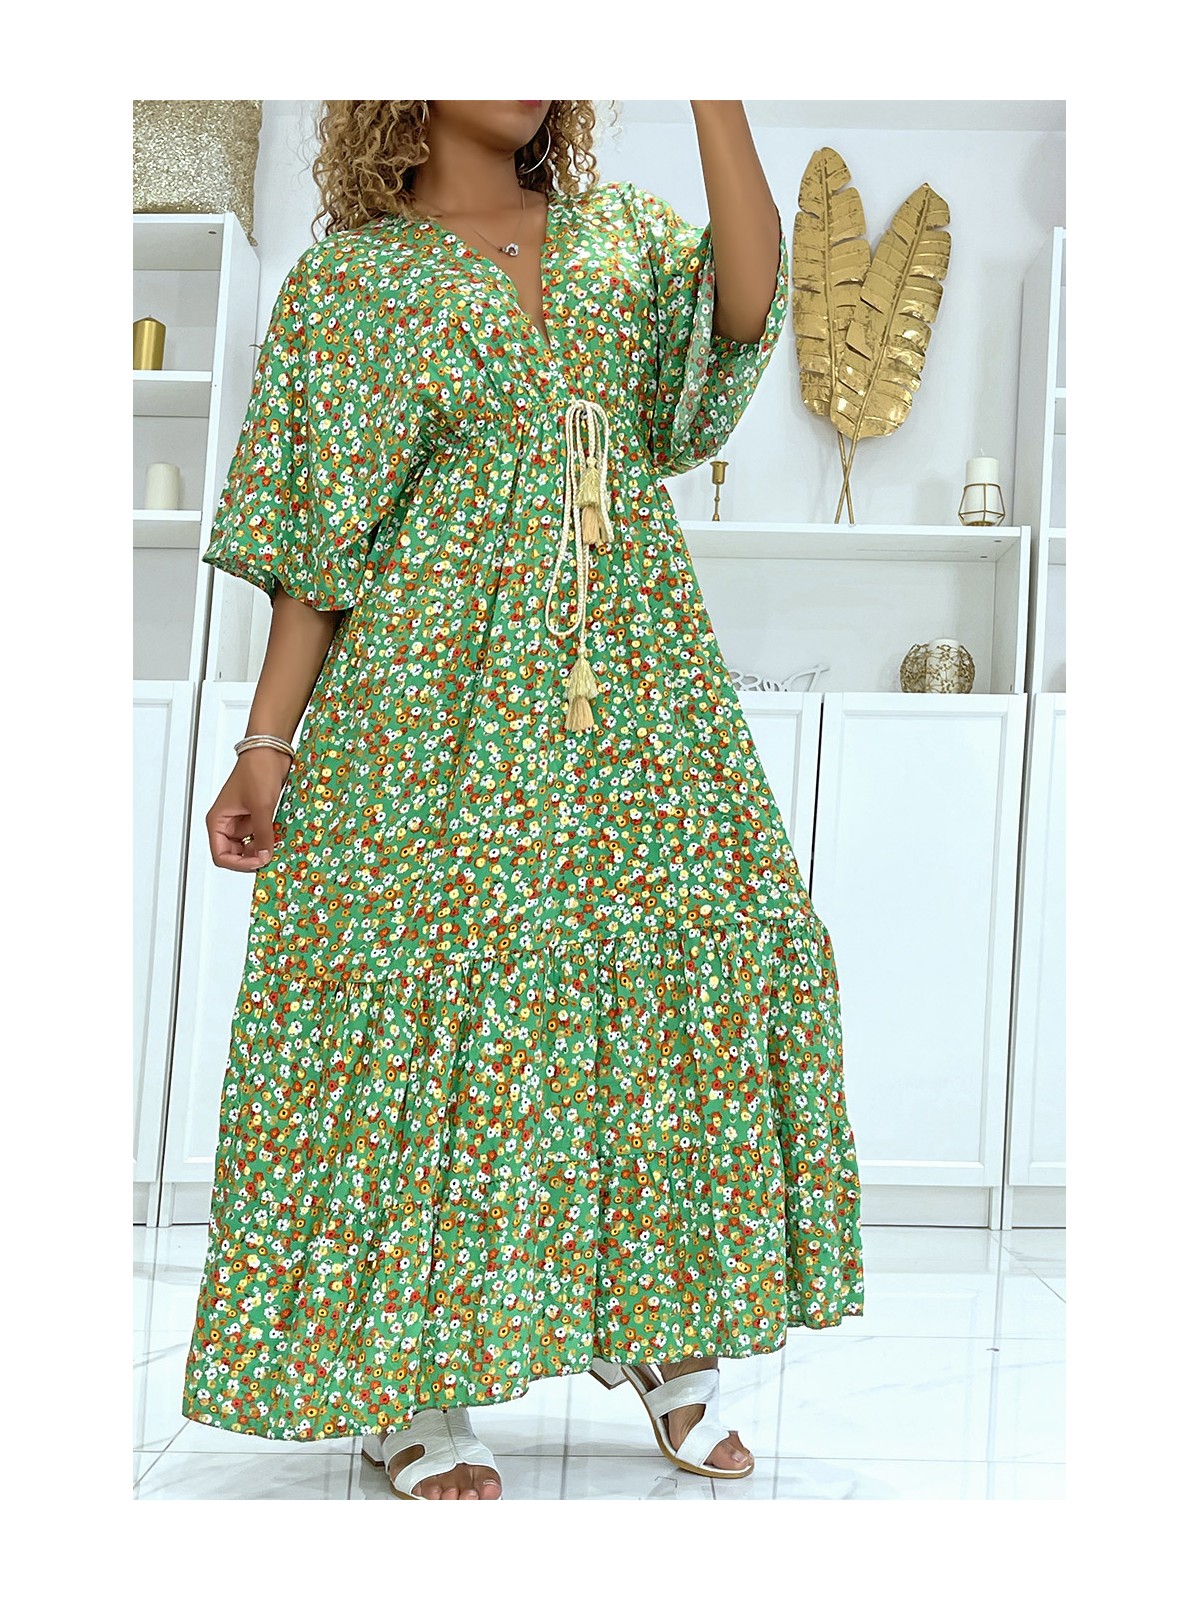 LoLLue robe verte fleurie à petite fleur dorée et magnifique imprimé floral multicolore - 1